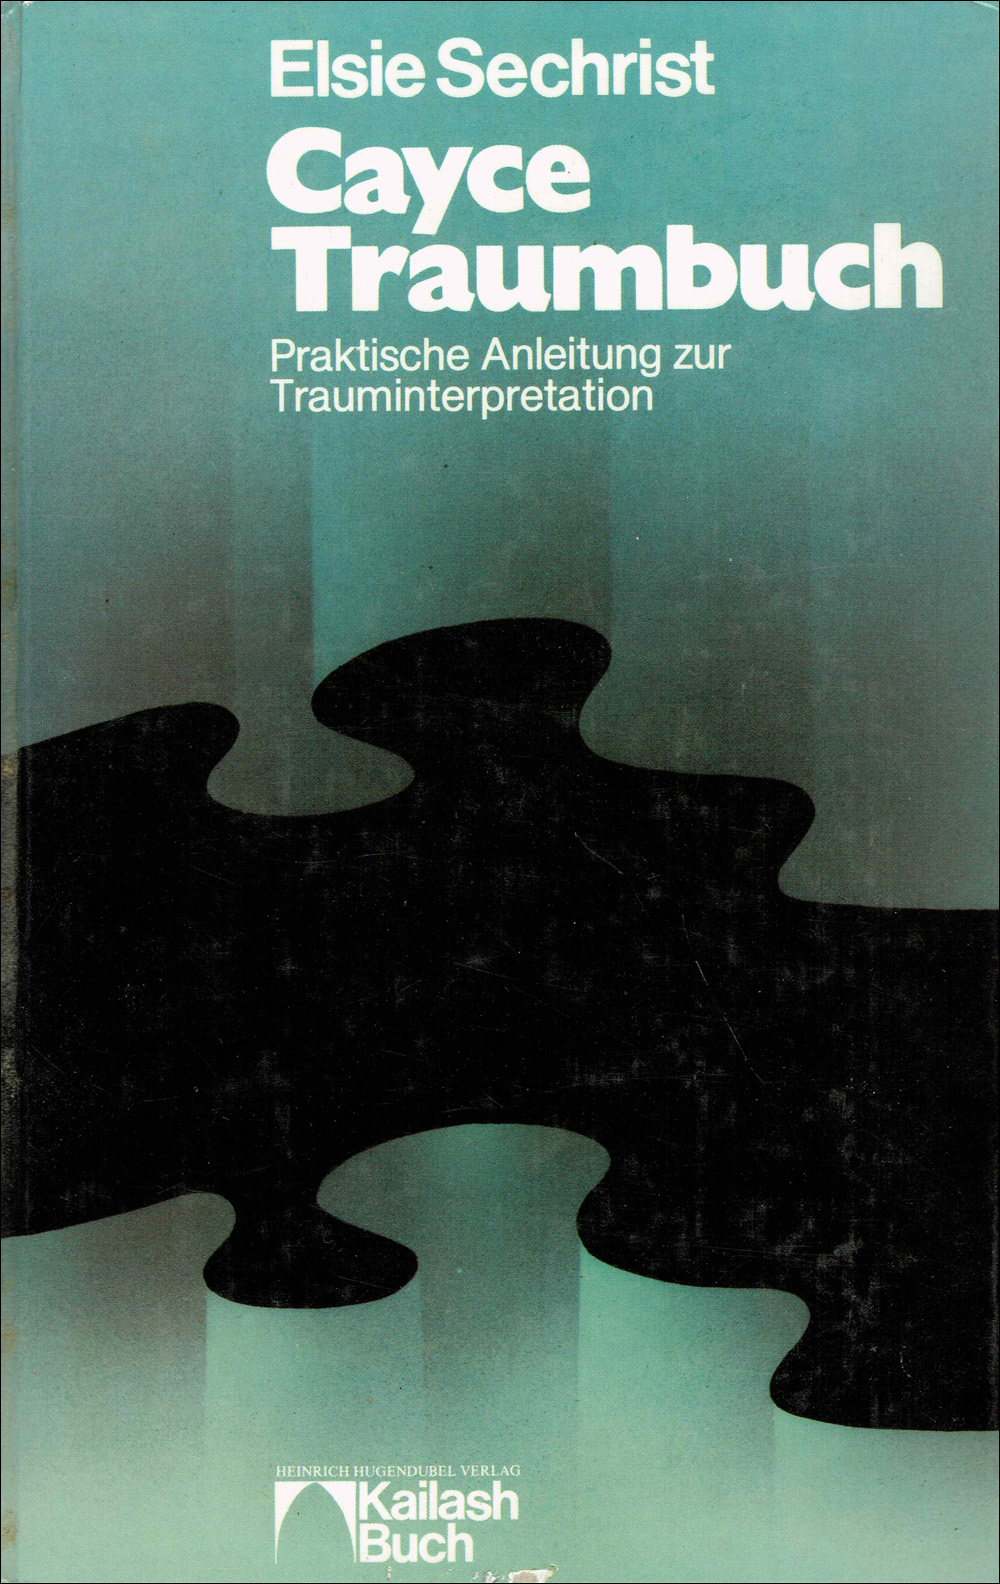 Edgar Cayce Traumbuch - Praktische Anleitung zur Trauminterpretation